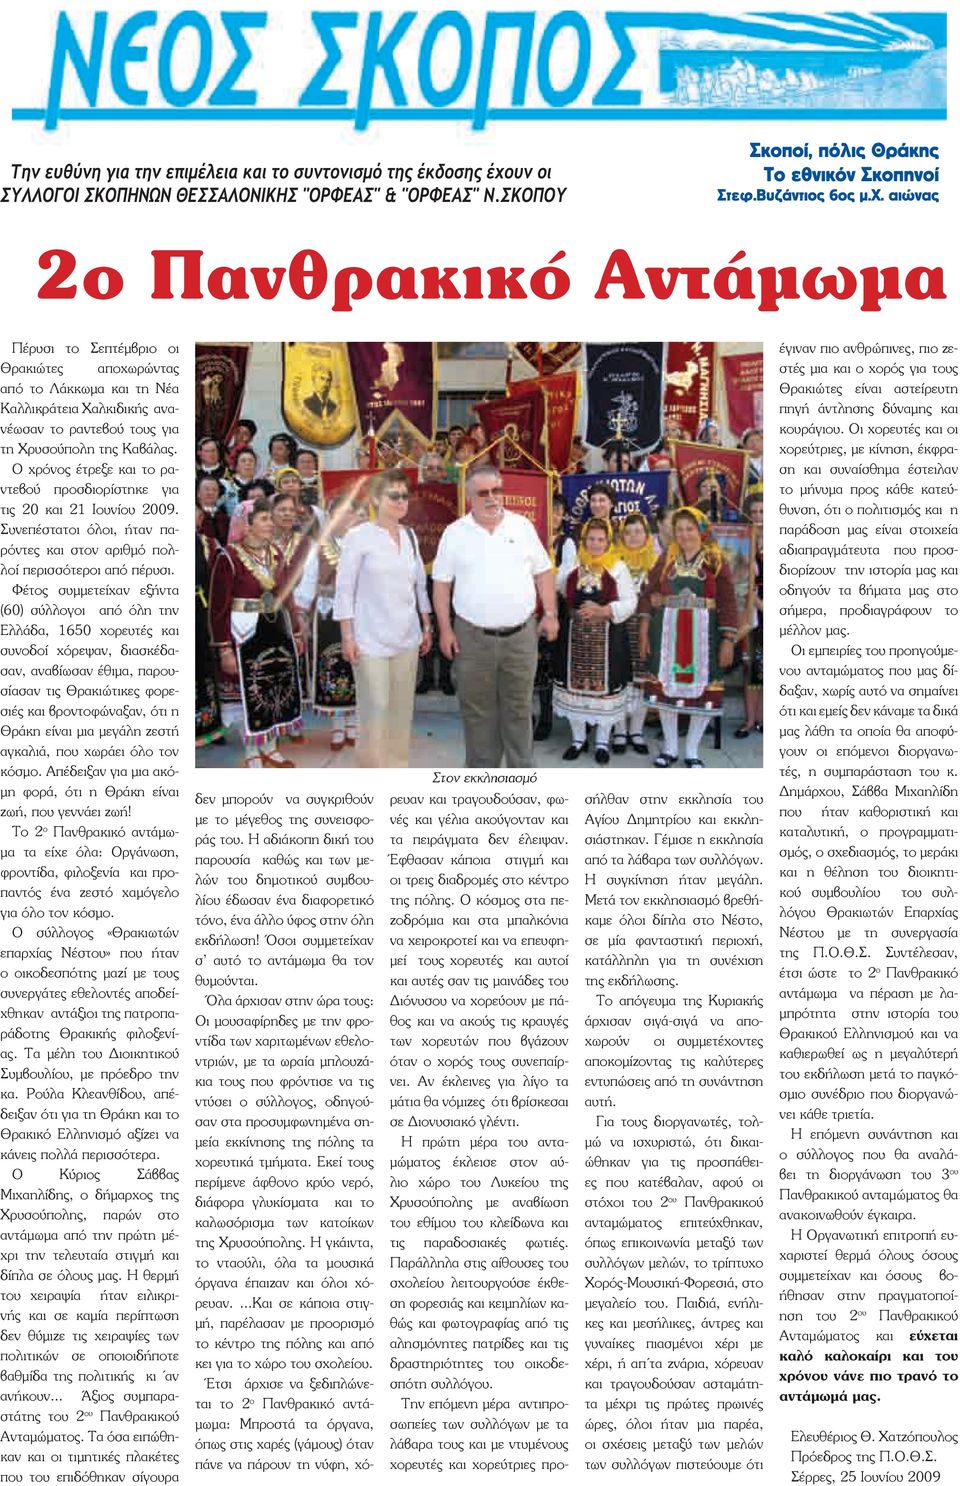 Φέτος συμμετείχαν εξήντα (60) σύλλογοι από όλη την Ελλάδα, 1650 χορευτές και συνοδοί χόρεψαν, διασκέδασαν, αναβίωσαν έθιμα, παρουσίασαν τις Θρακιώτικες φορεσιές και βροντοφώναξαν, ότι η Θράκη είναι